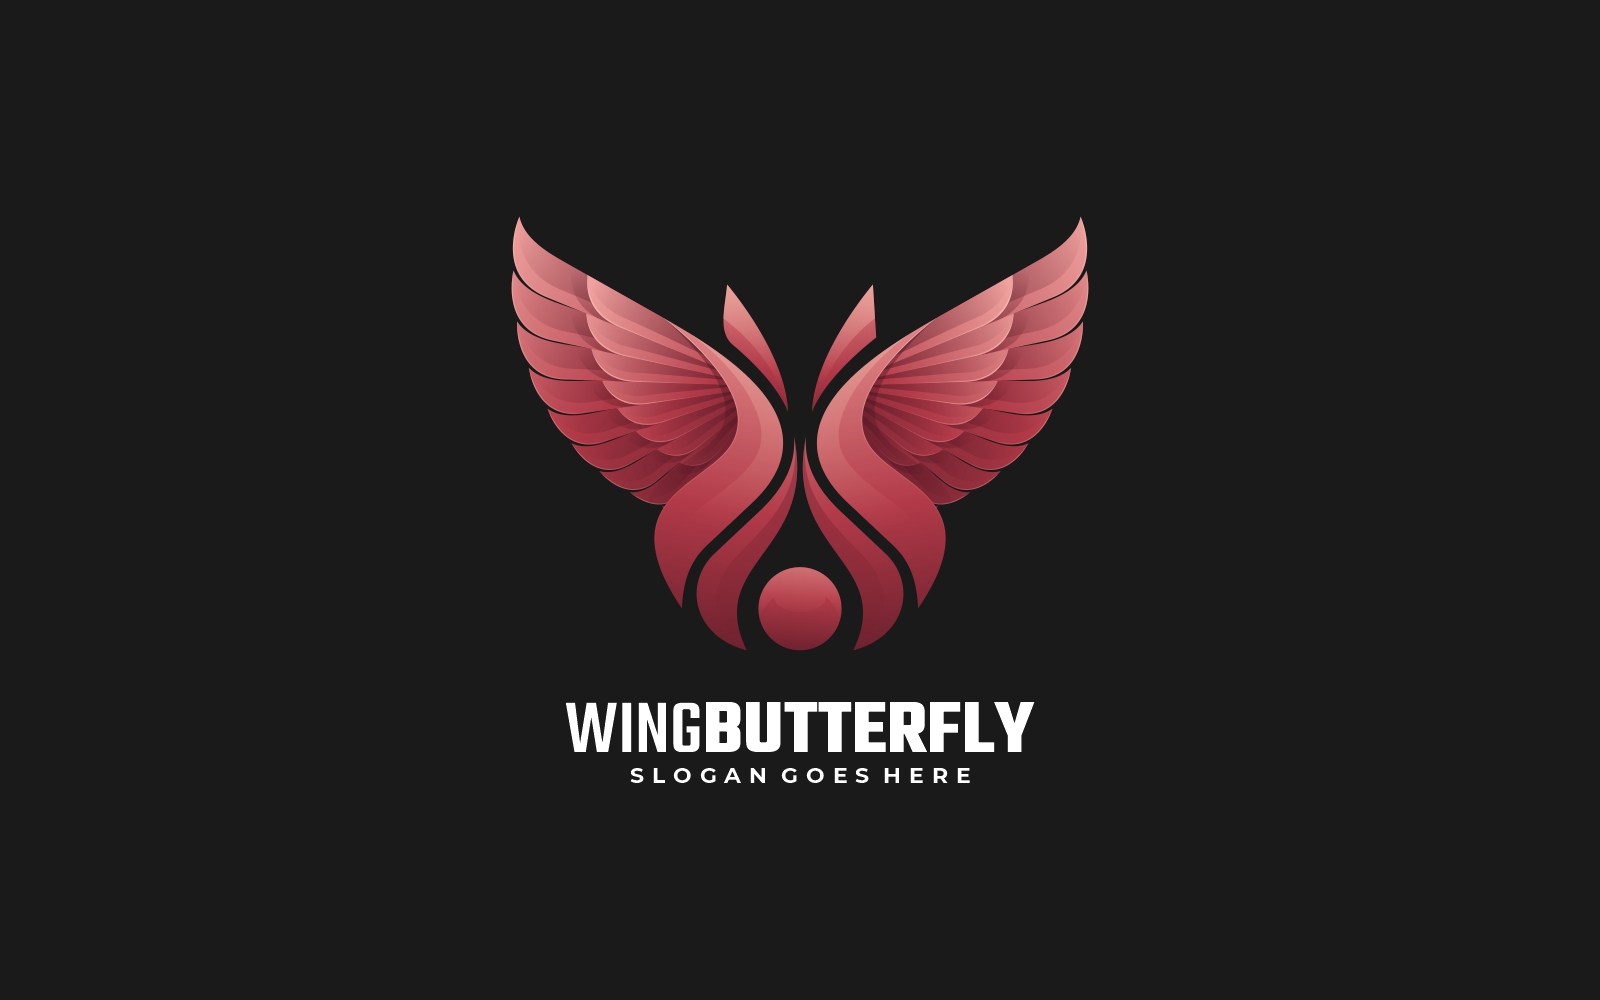 Wings Butterfly Gradient Logo Style